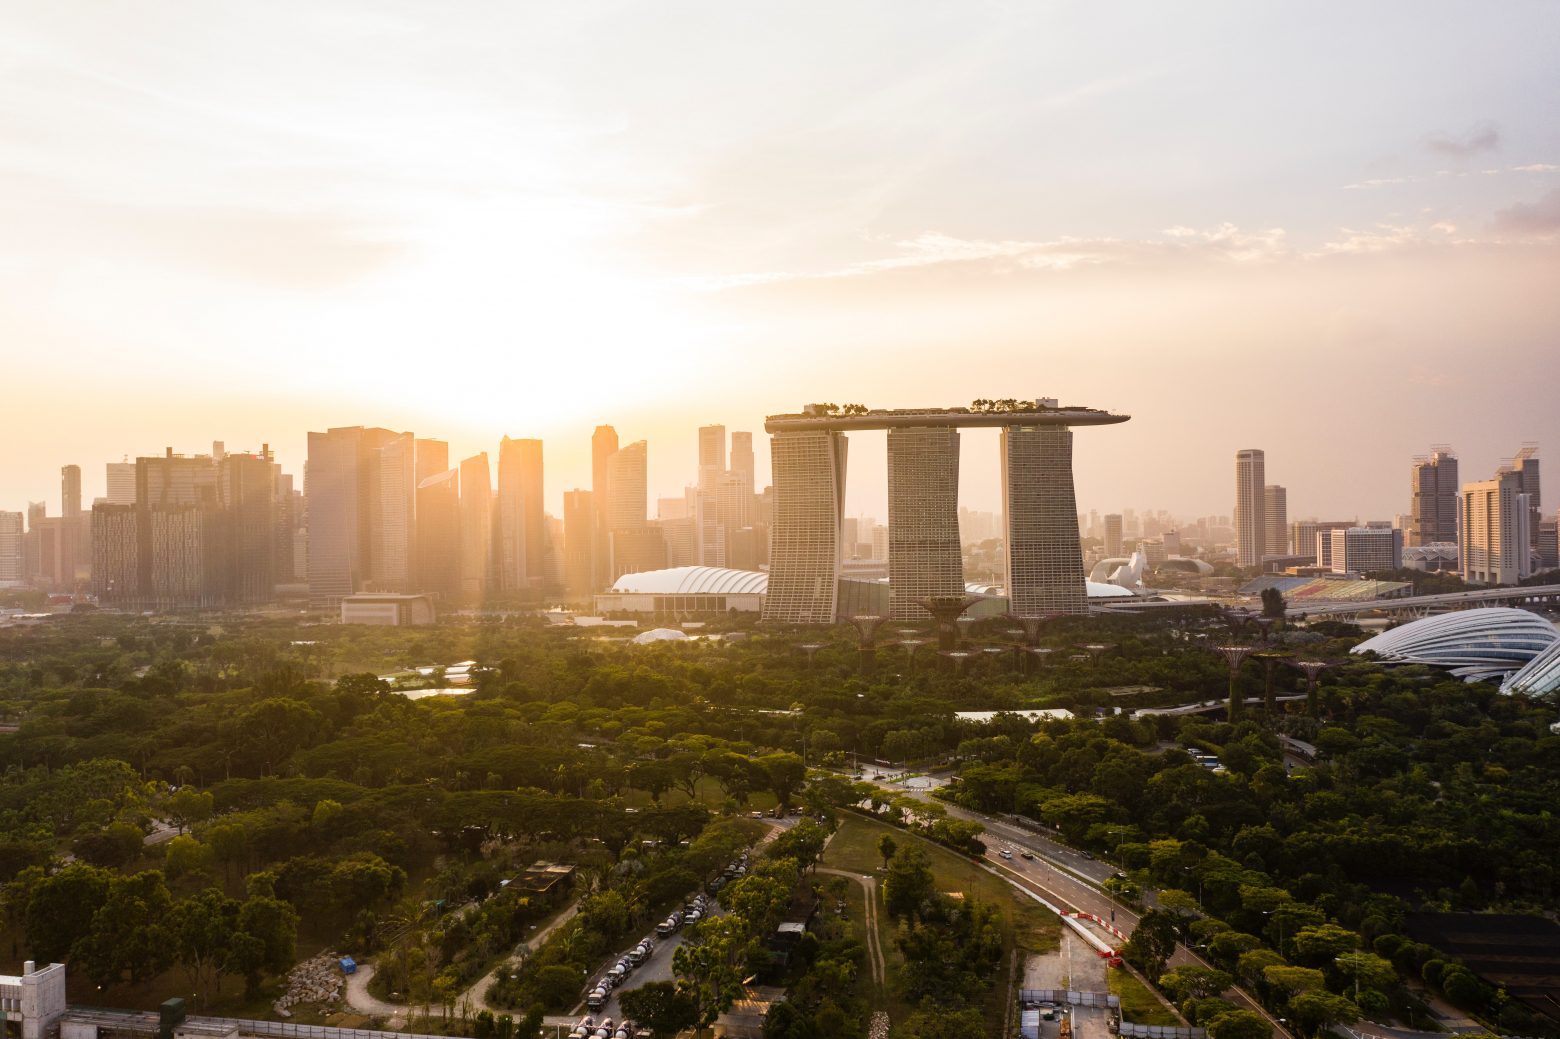 Σιγκαπούρη: Γιατί θέλει να σταματήσει την καταμέτρηση κρουσμάτων κοροναϊού; - Το σχέδιο επιστροφής στην κανονικότητα